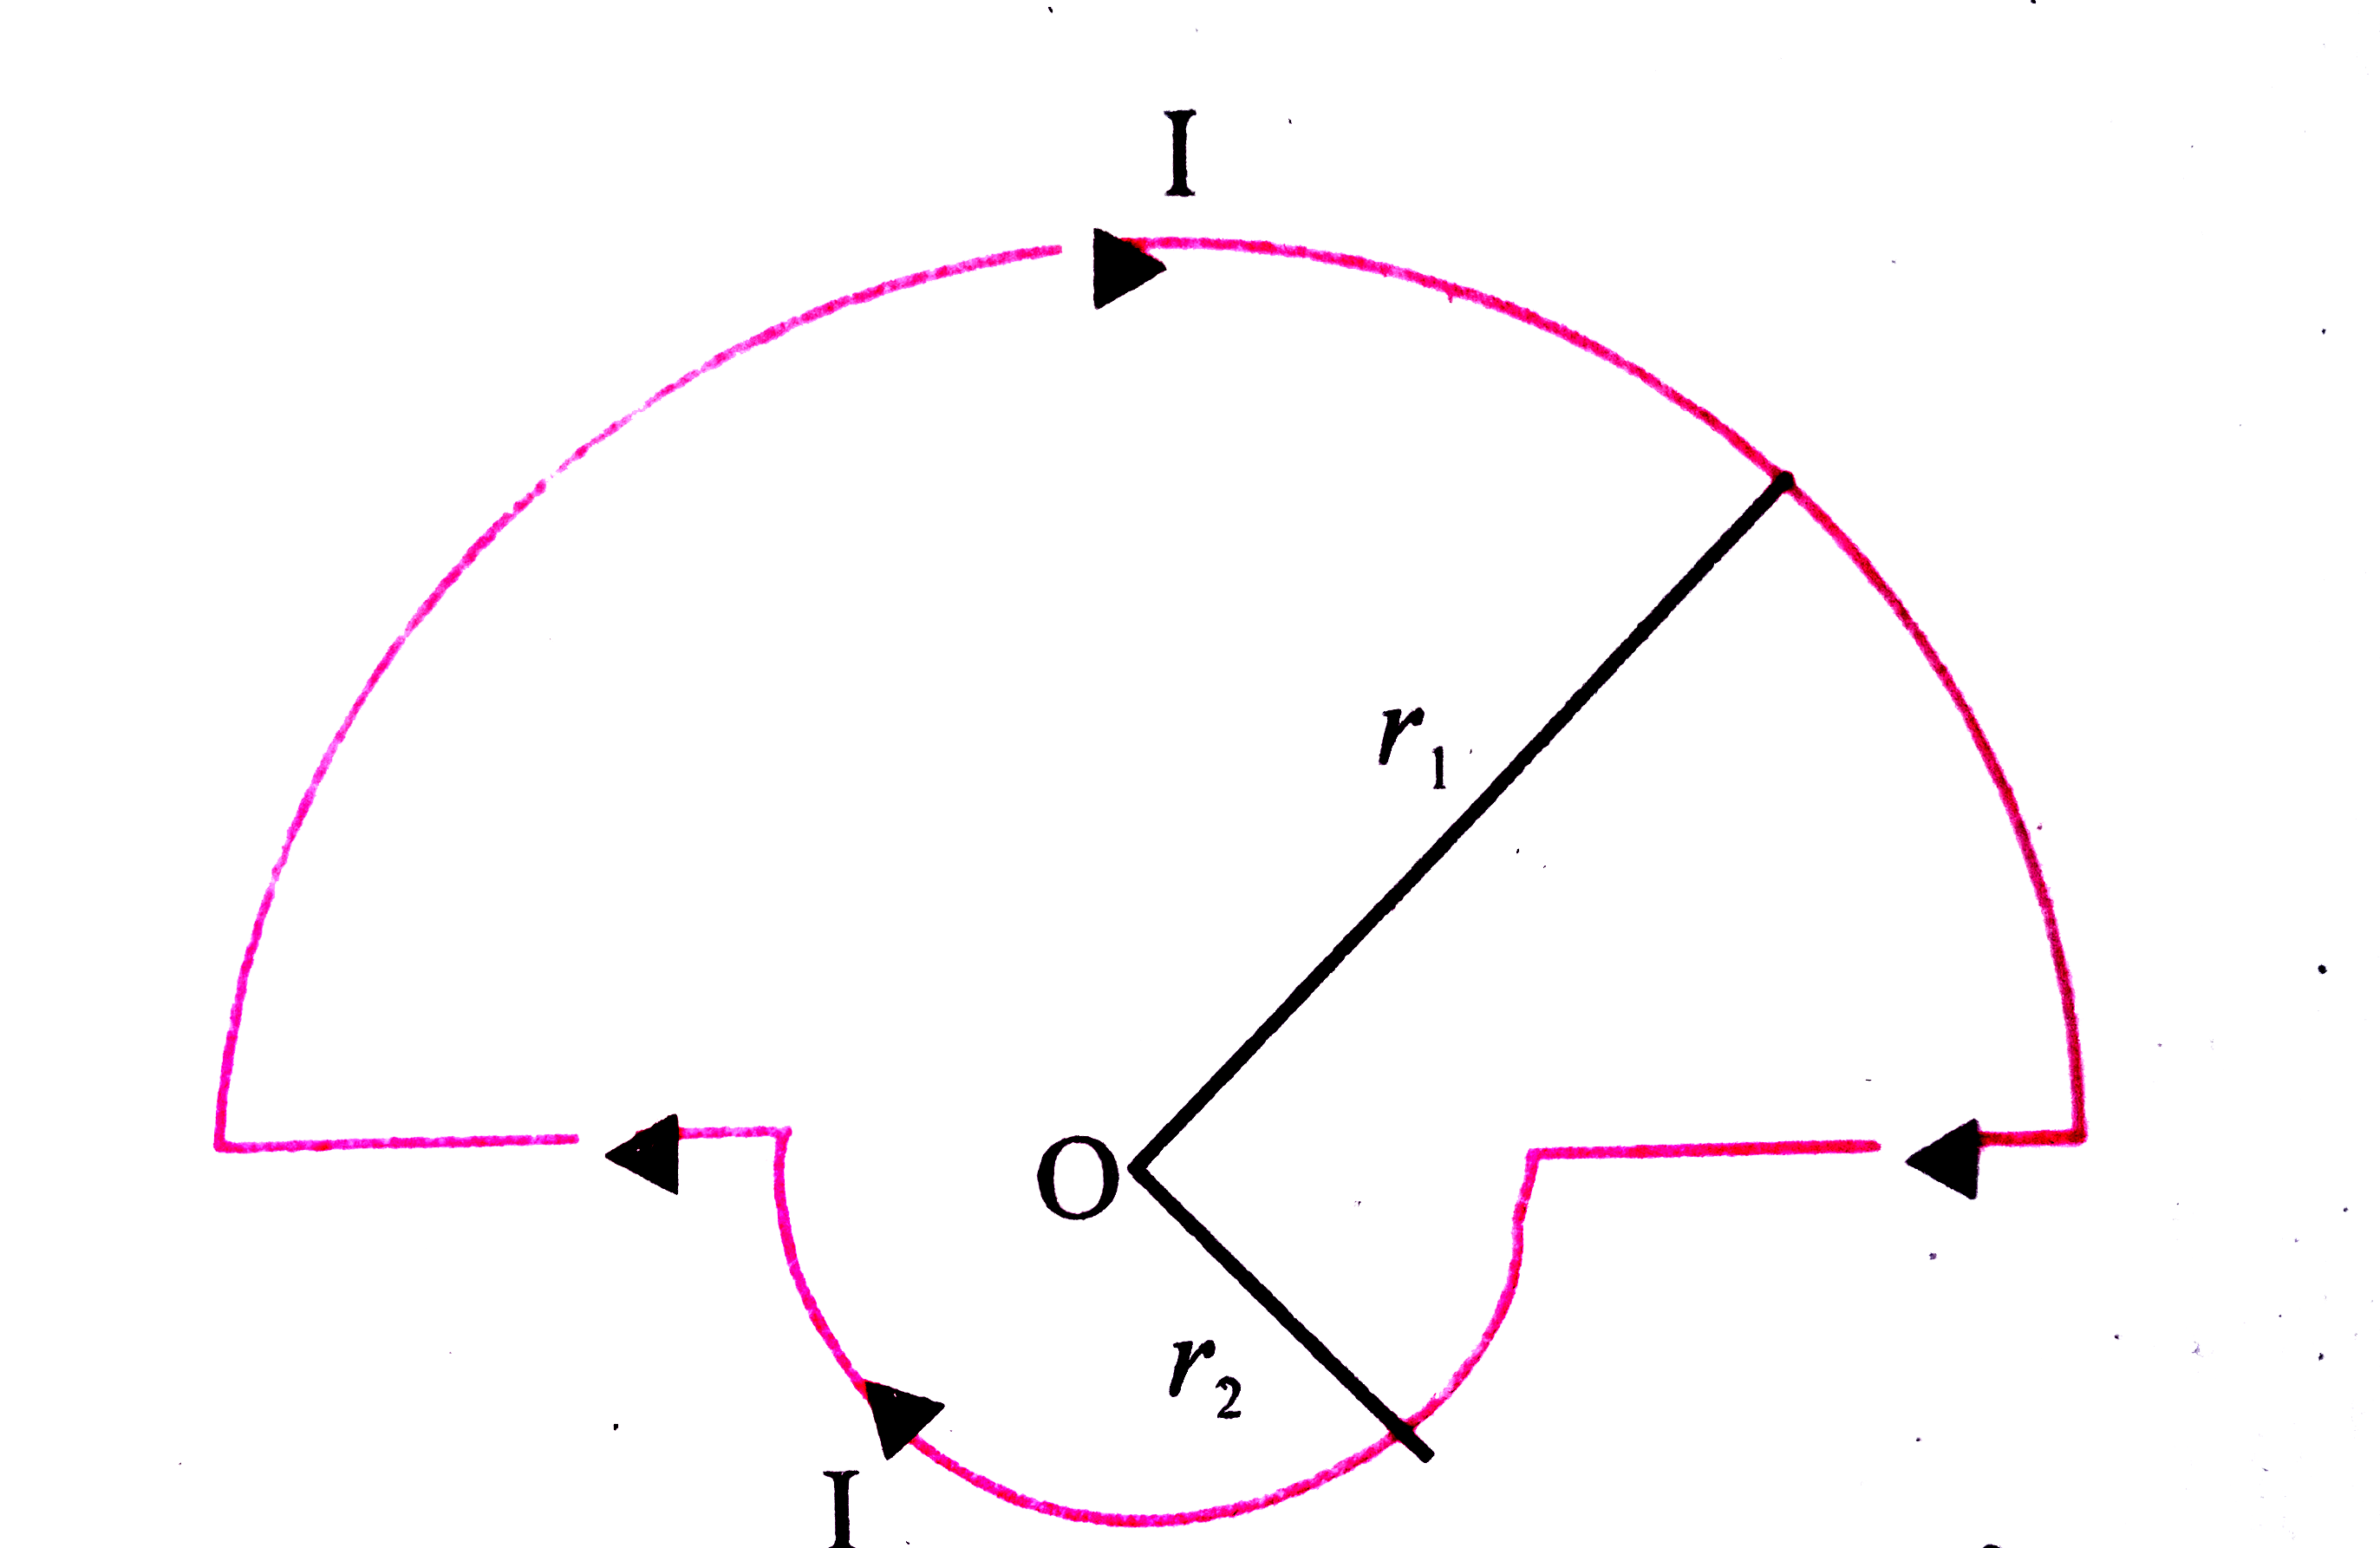 दो अर्द्धवृत्ताकार तार r(1) व r(2) त्रिज्या पर निम्न चित्रानुसार संयोजित है क्षेत्र की दिशा तथा केंद्र O पर चुंबकीय क्षेत्र की तीव्रता क्या होगी ?